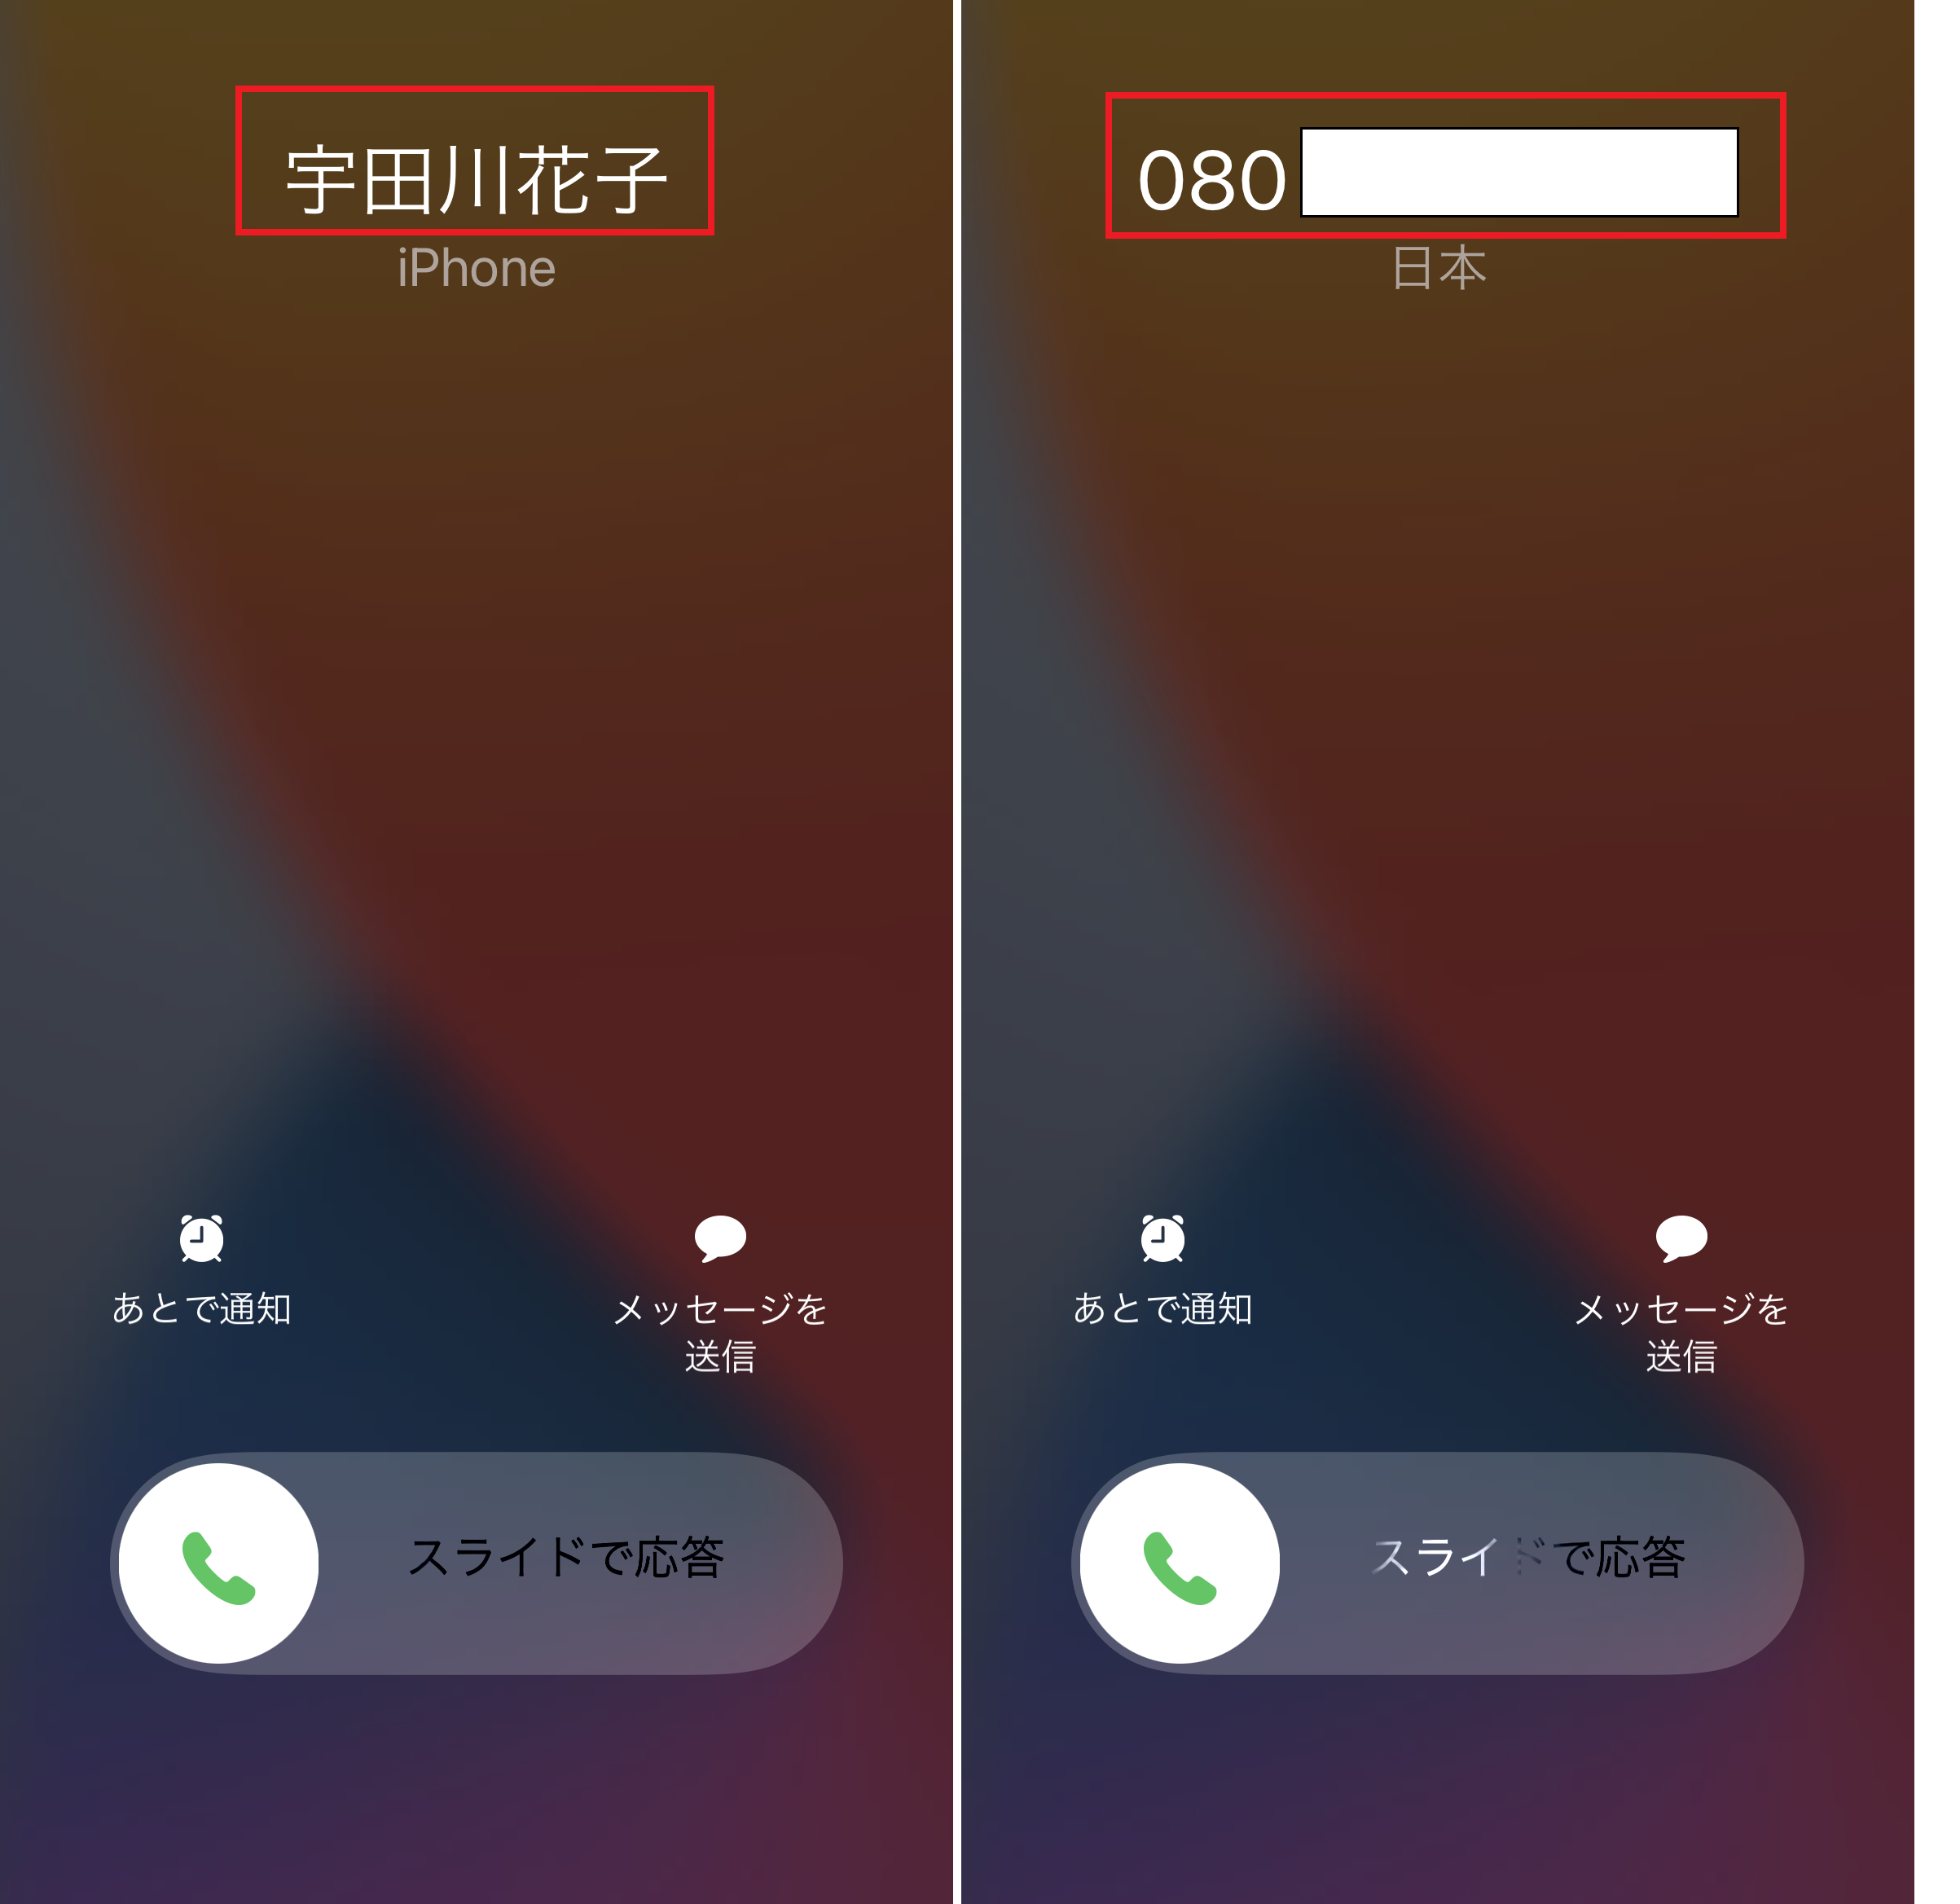 電話がかかってきた 誰からの着信かsiriに 音声 で教えてもらおう Iphone Tips Engadget 日本版